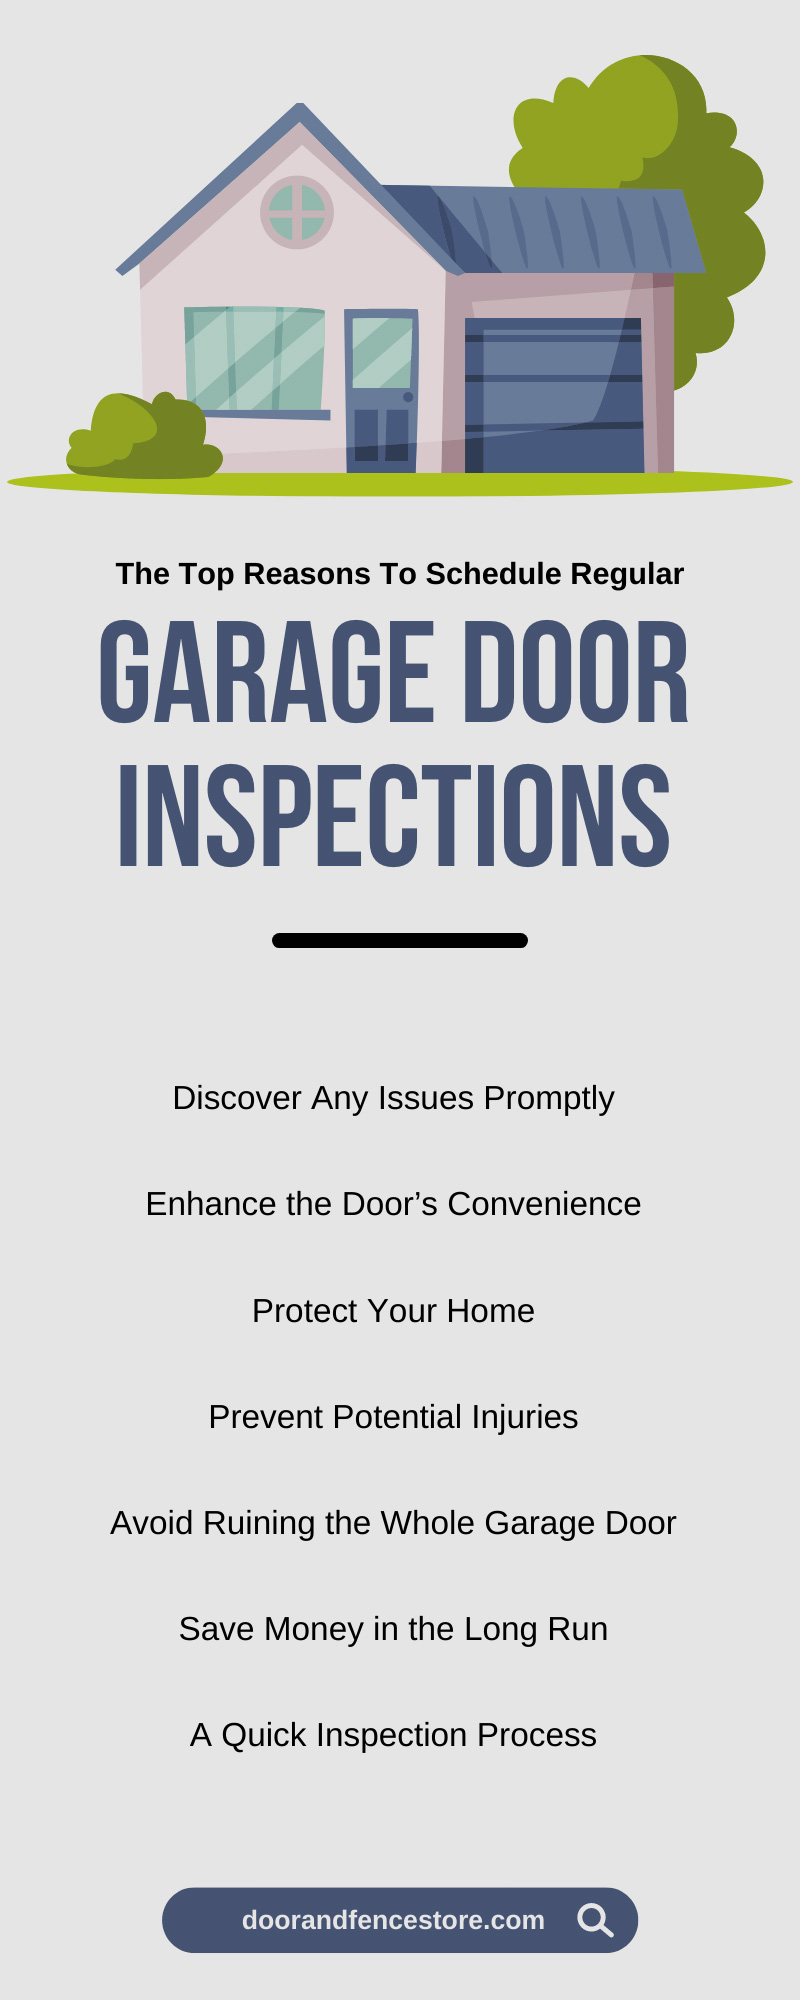 The Top Reasons To Schedule Regular Garage Door Inspections